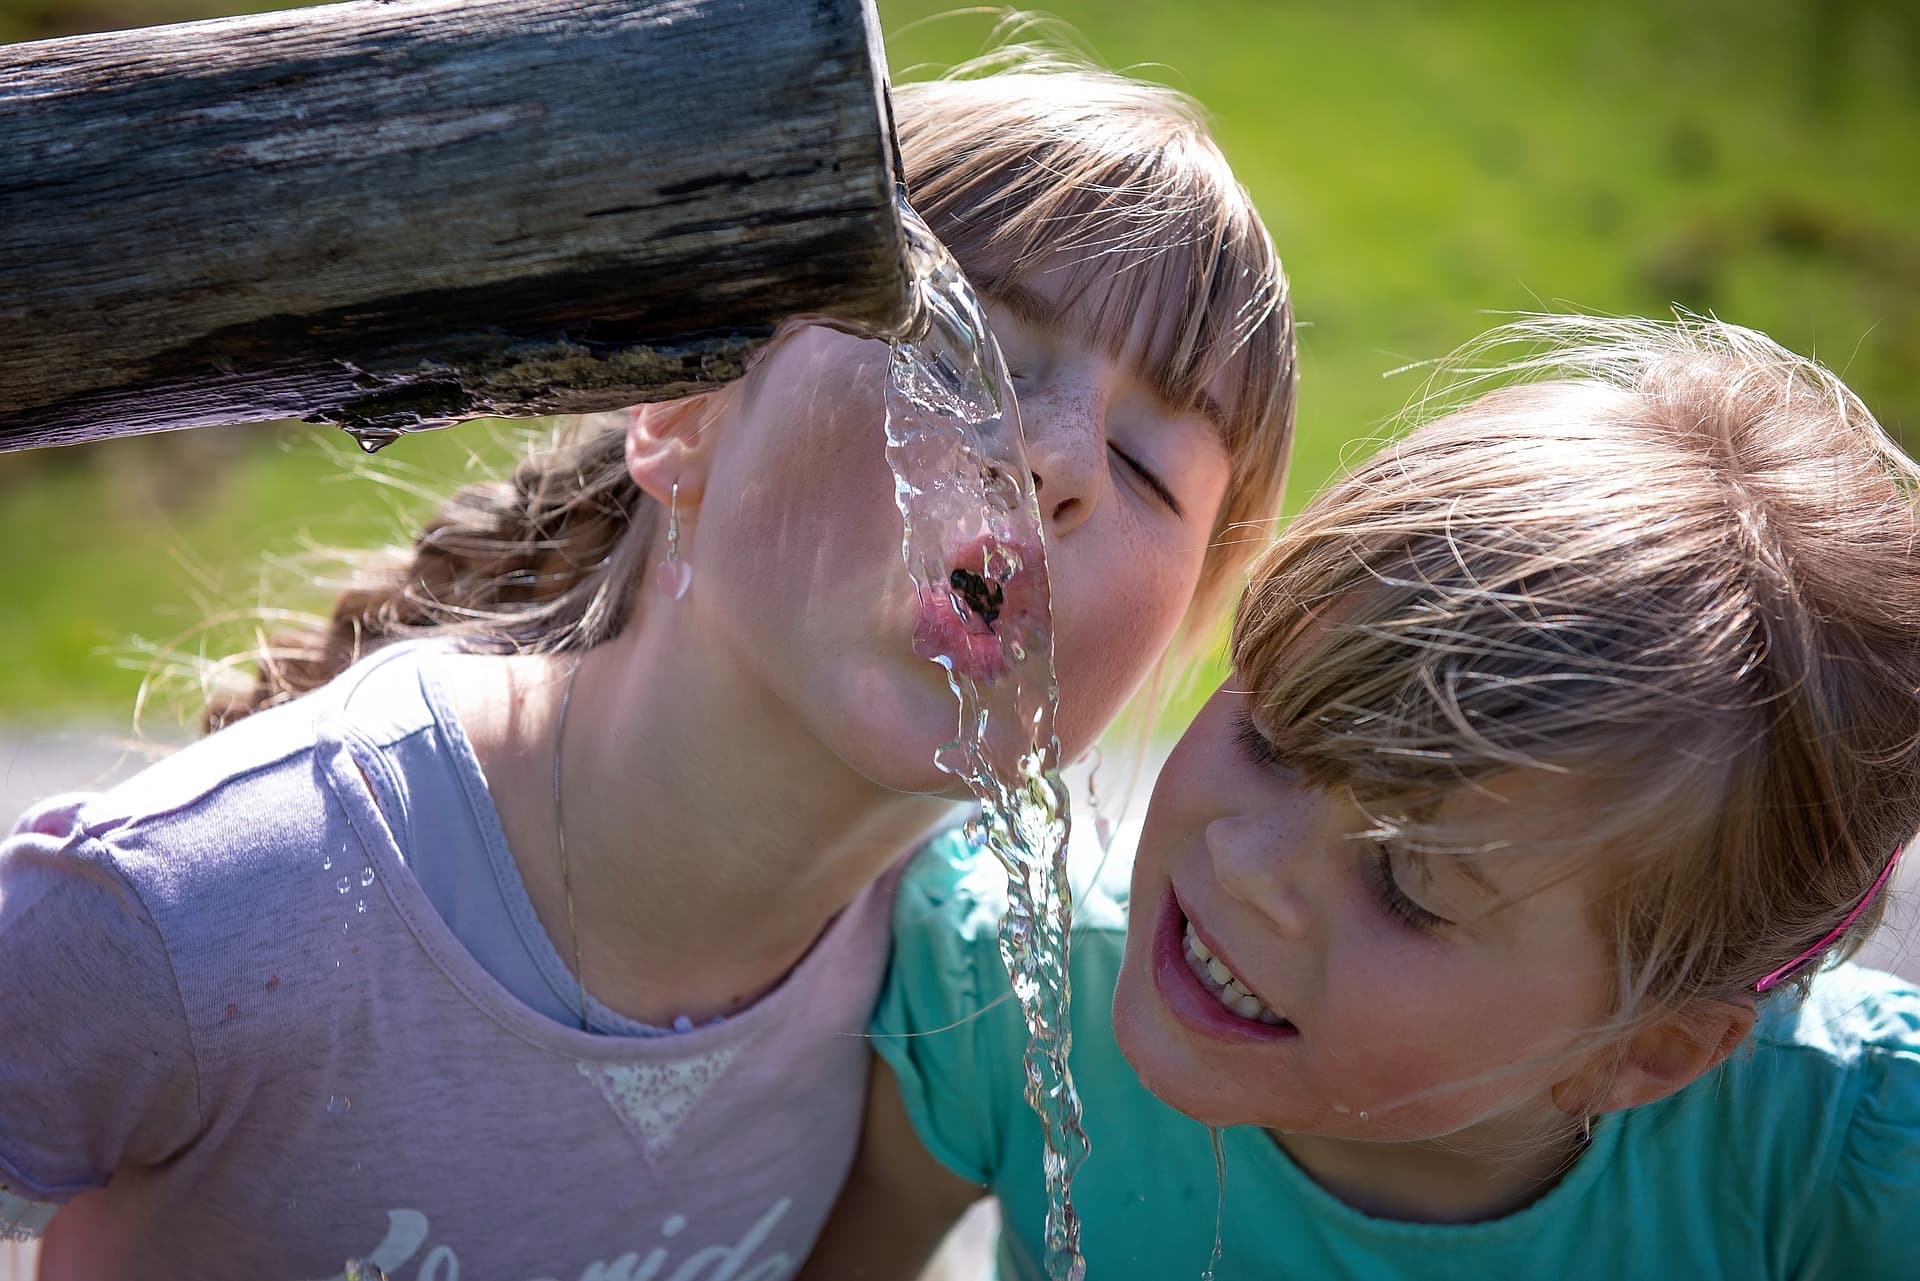 Children drinking water